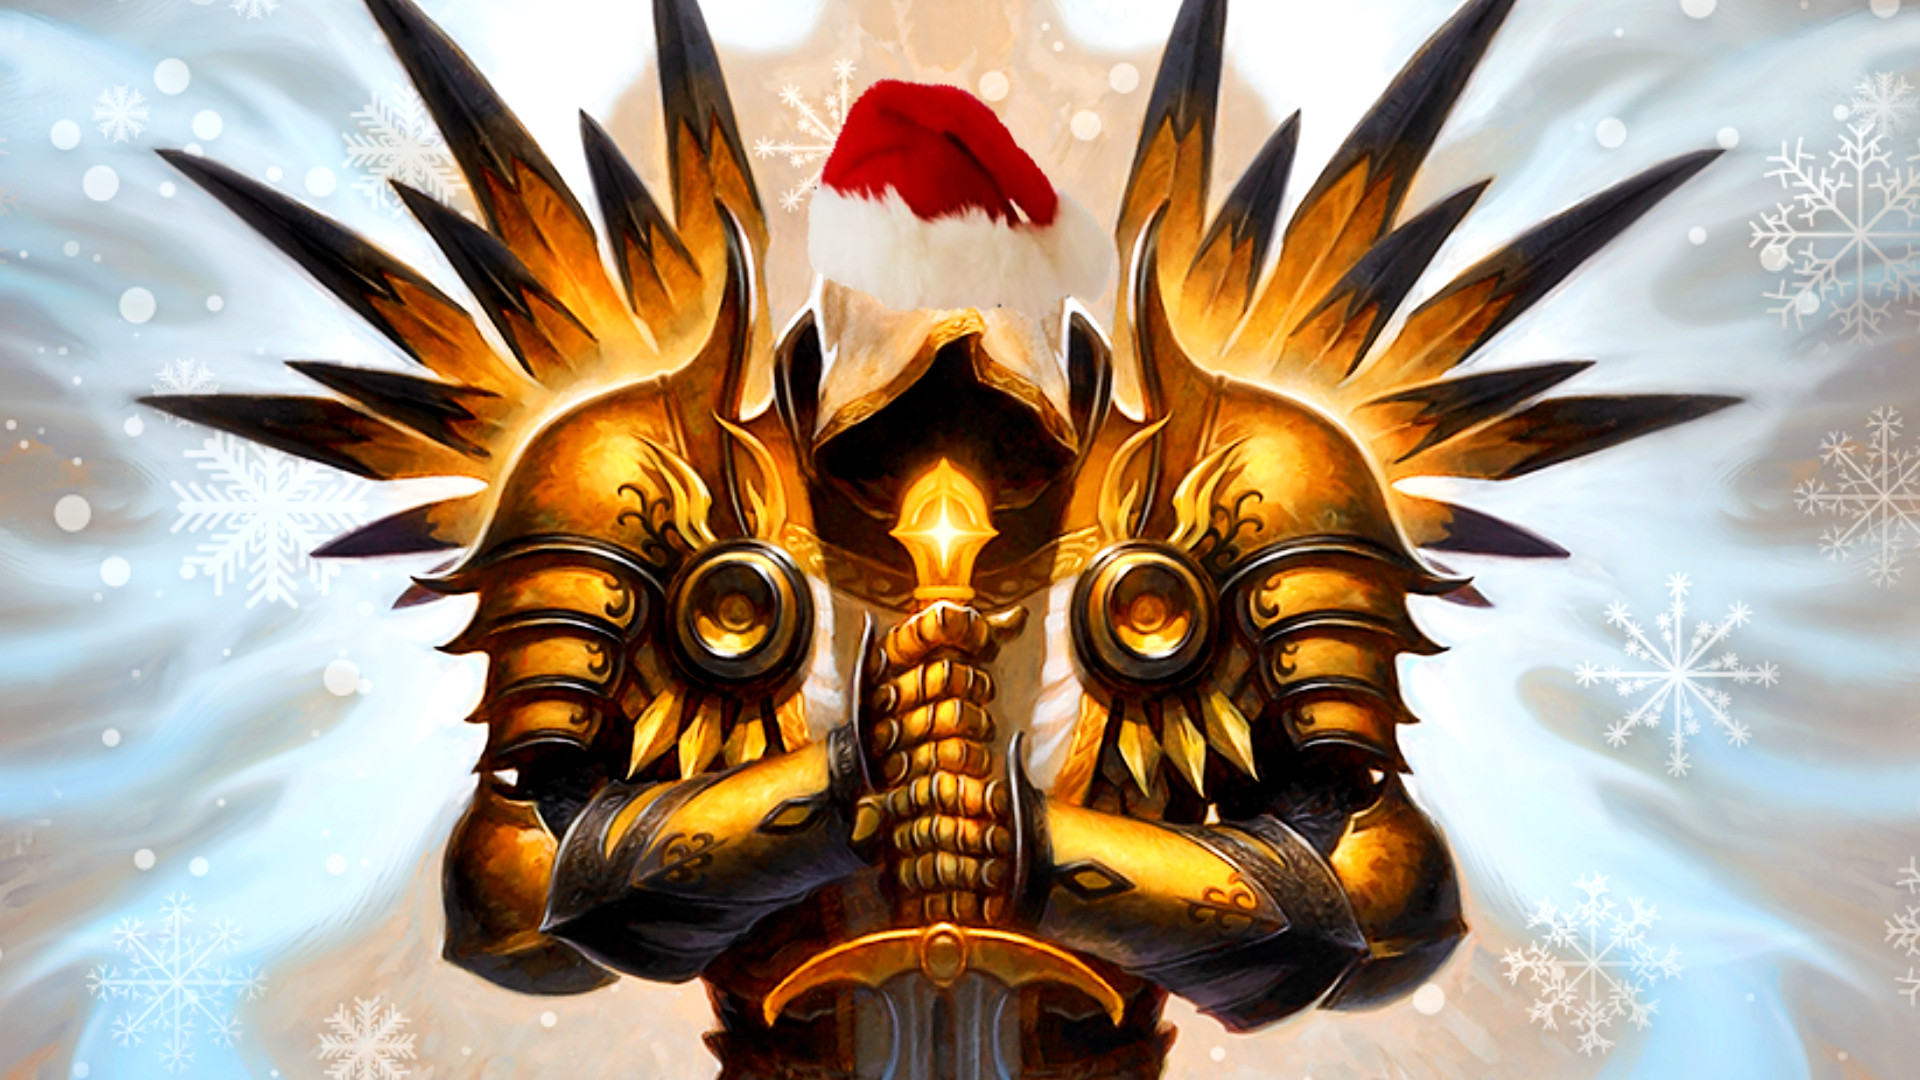 Diablo 3 event celebrates holiday season to ease Diablo 4 beta wait